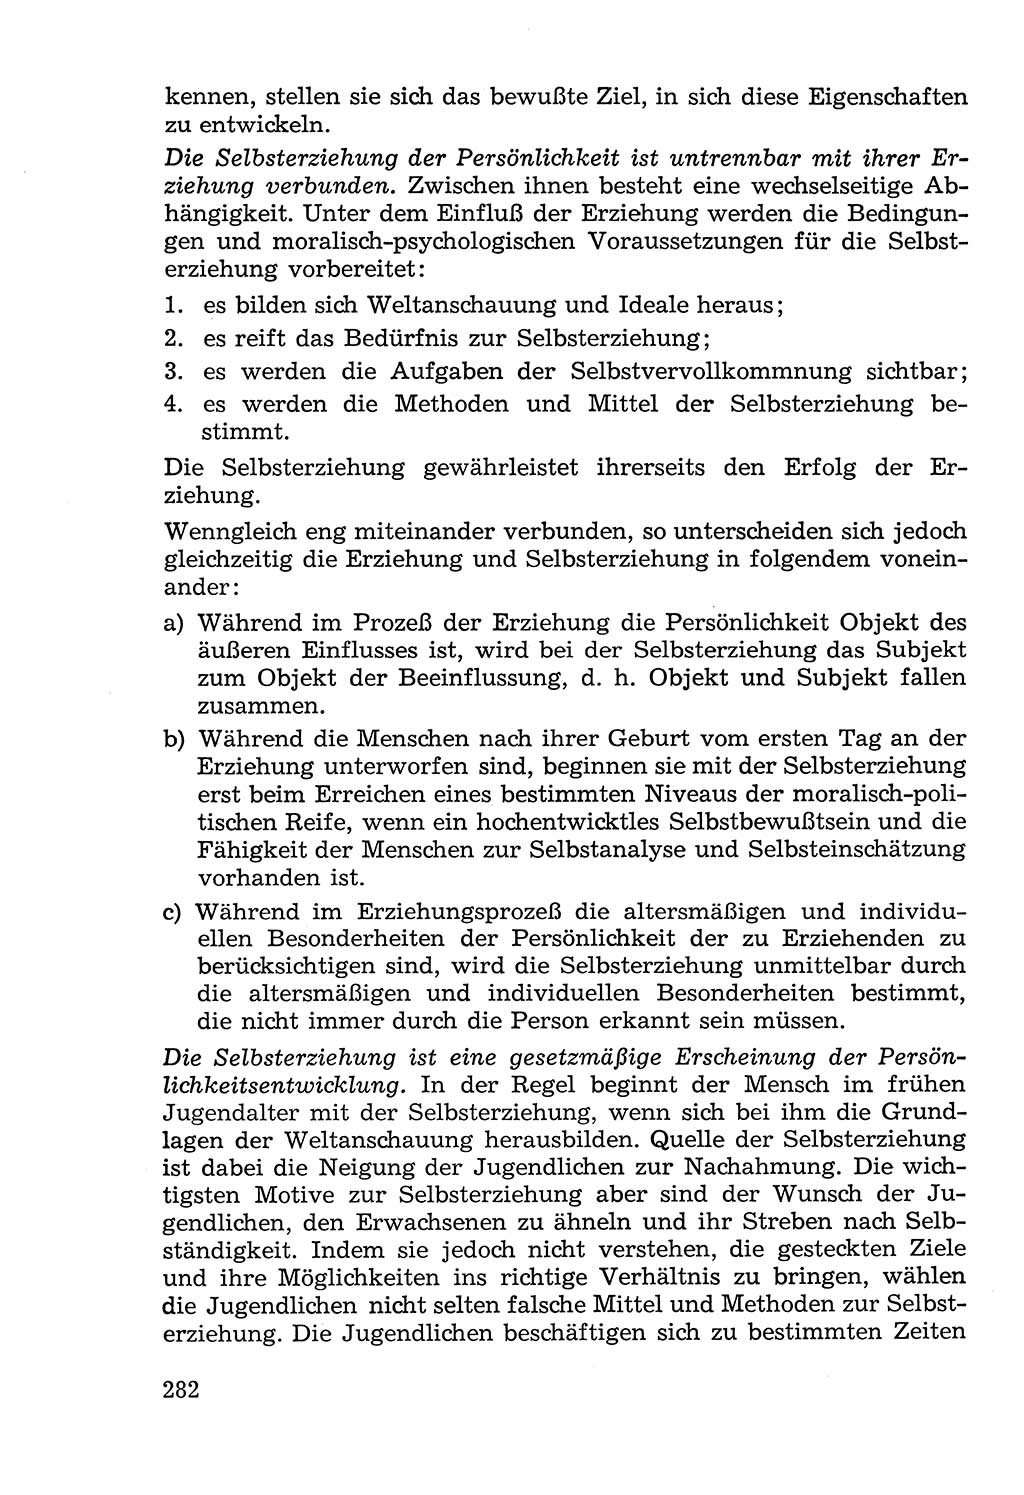 Lehrbuch der Strafvollzugspädagogik [Deutsche Demokratische Republik (DDR)] 1969, Seite 282 (Lb. SV-Pd. DDR 1969, S. 282)